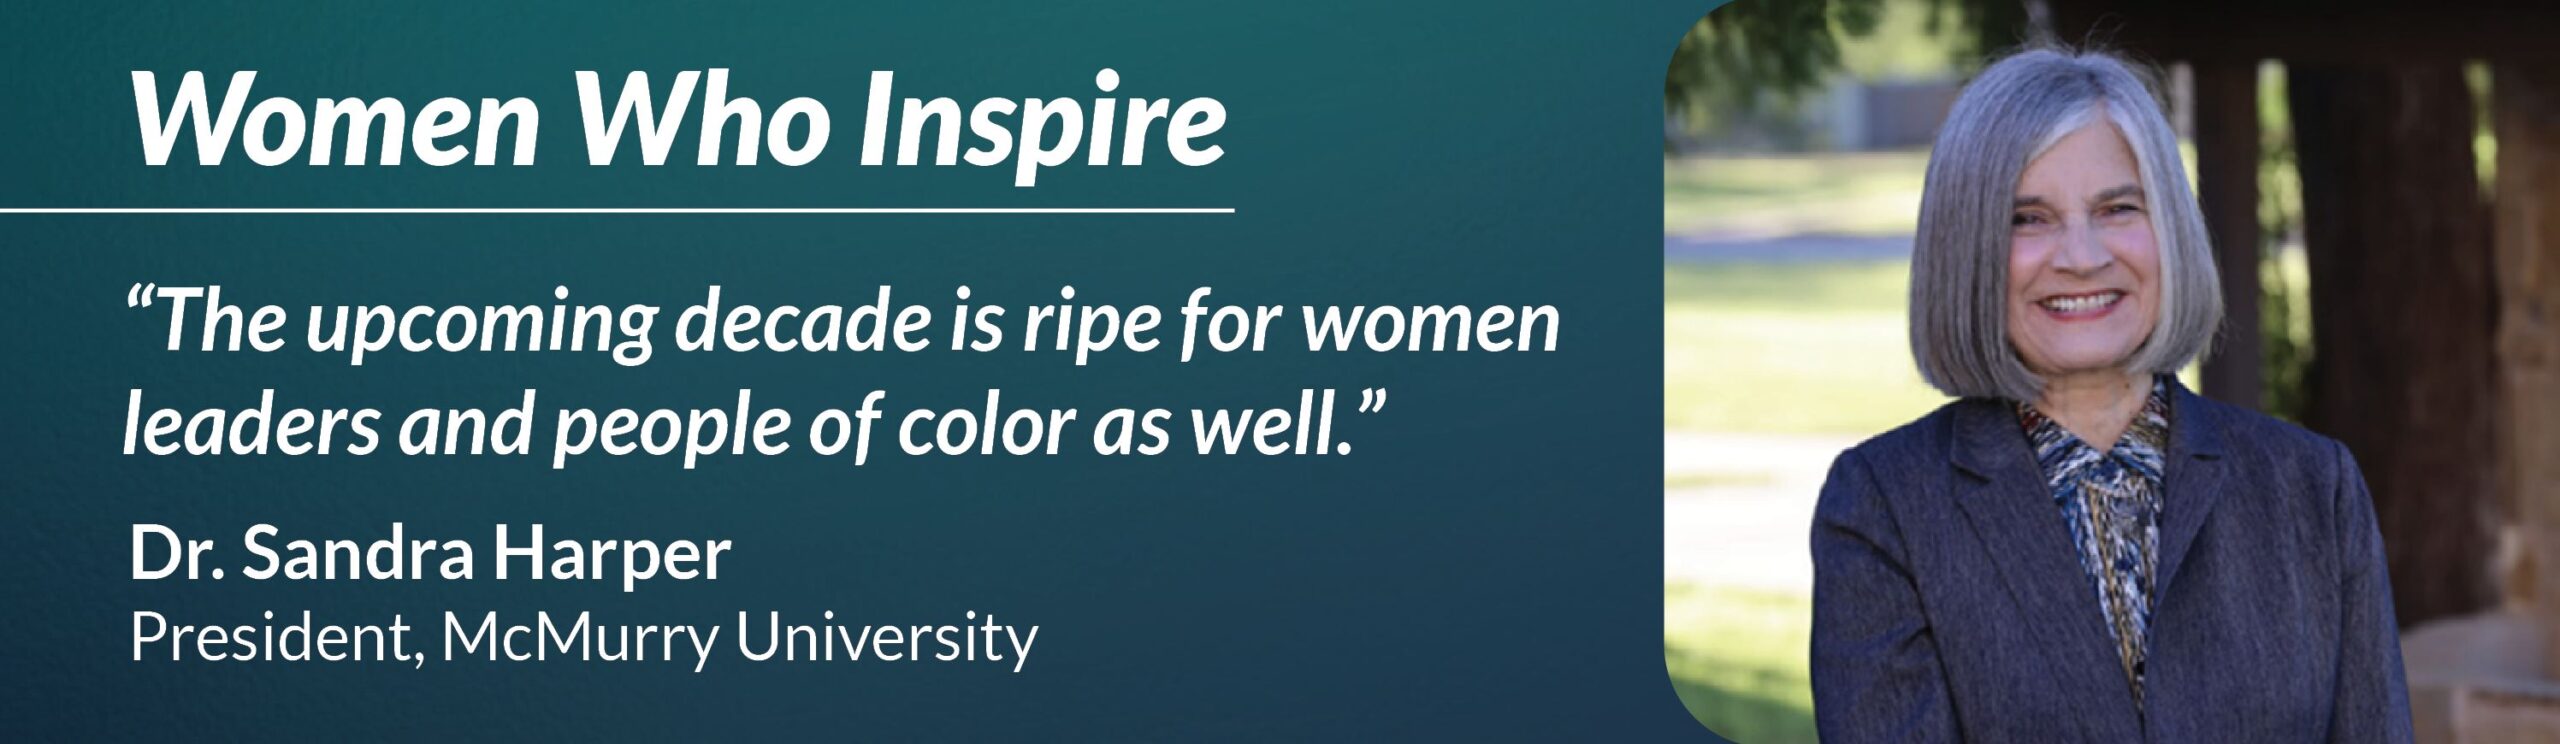 Women Who Inspire Dr. Sandra Harper